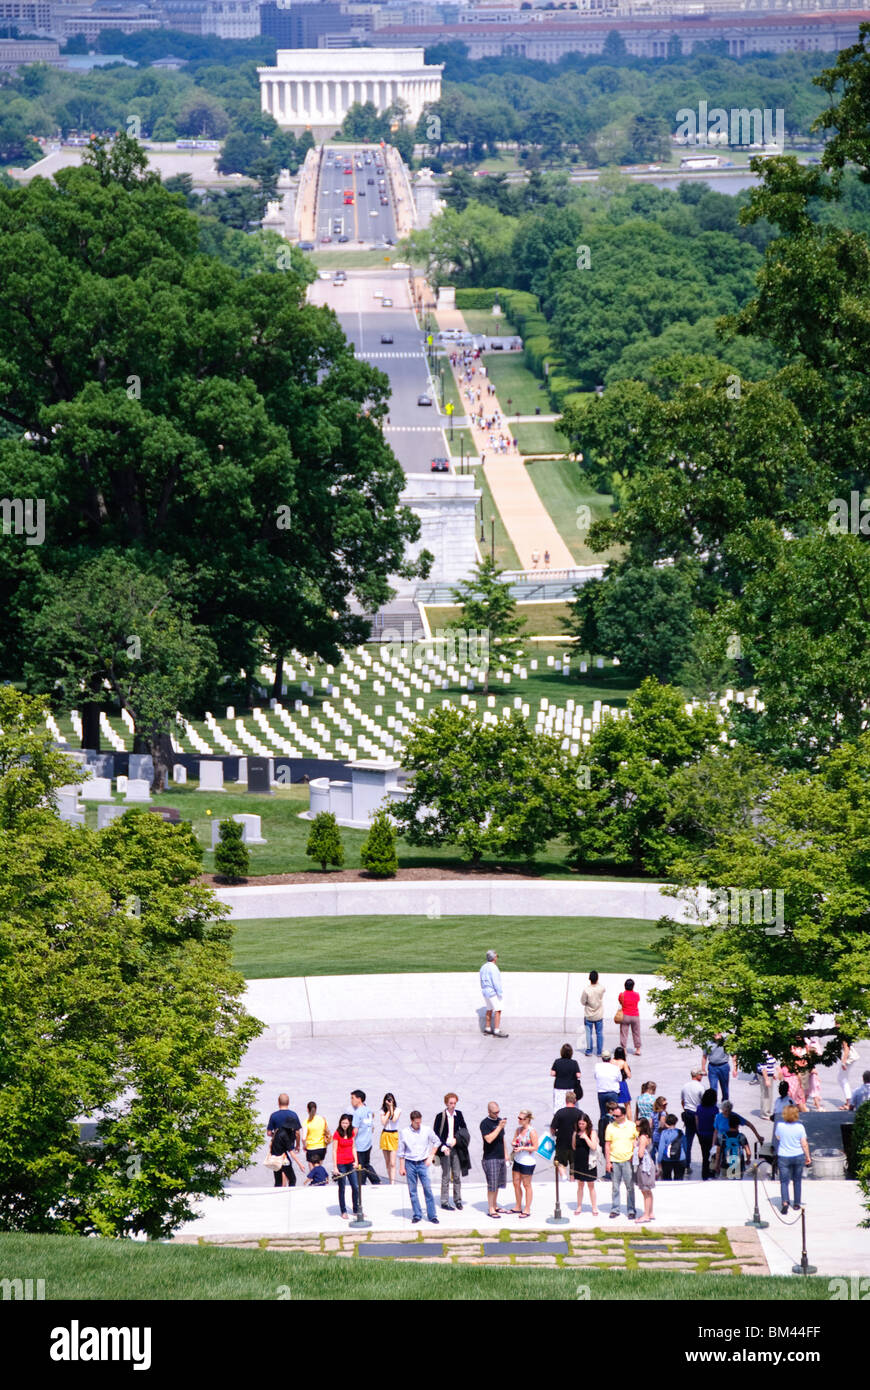 WASHINGTON DC, USA - Les touristes à la tombe de John F. Kennedy au cimetière d'Arlington (premier plan) avec Memorial Bridge et le Mémorial de Lincoln à l'arrière-plan. Avis de Arlington House. Banque D'Images